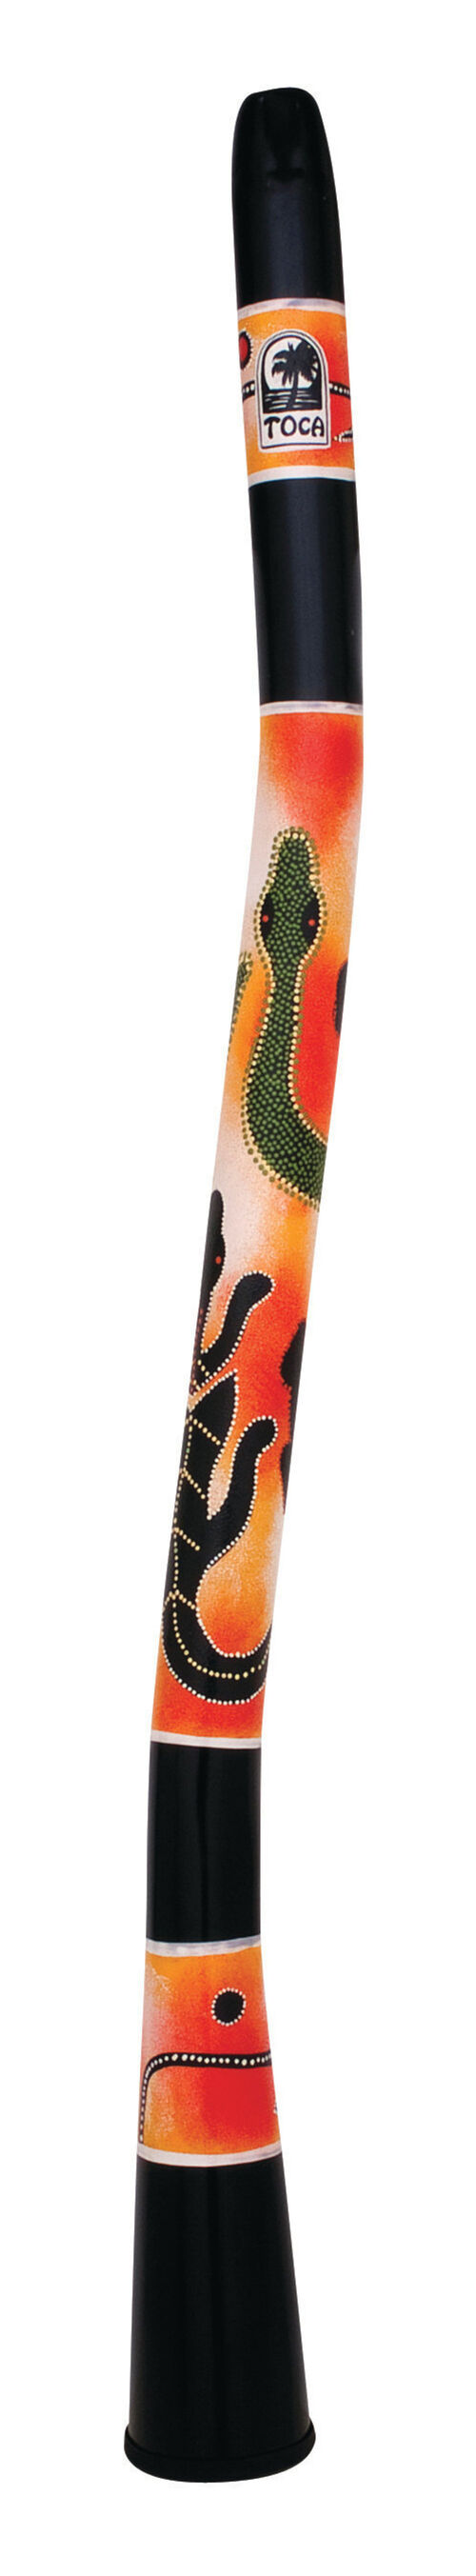 World Percussion Didgeridoos curvados Gecko